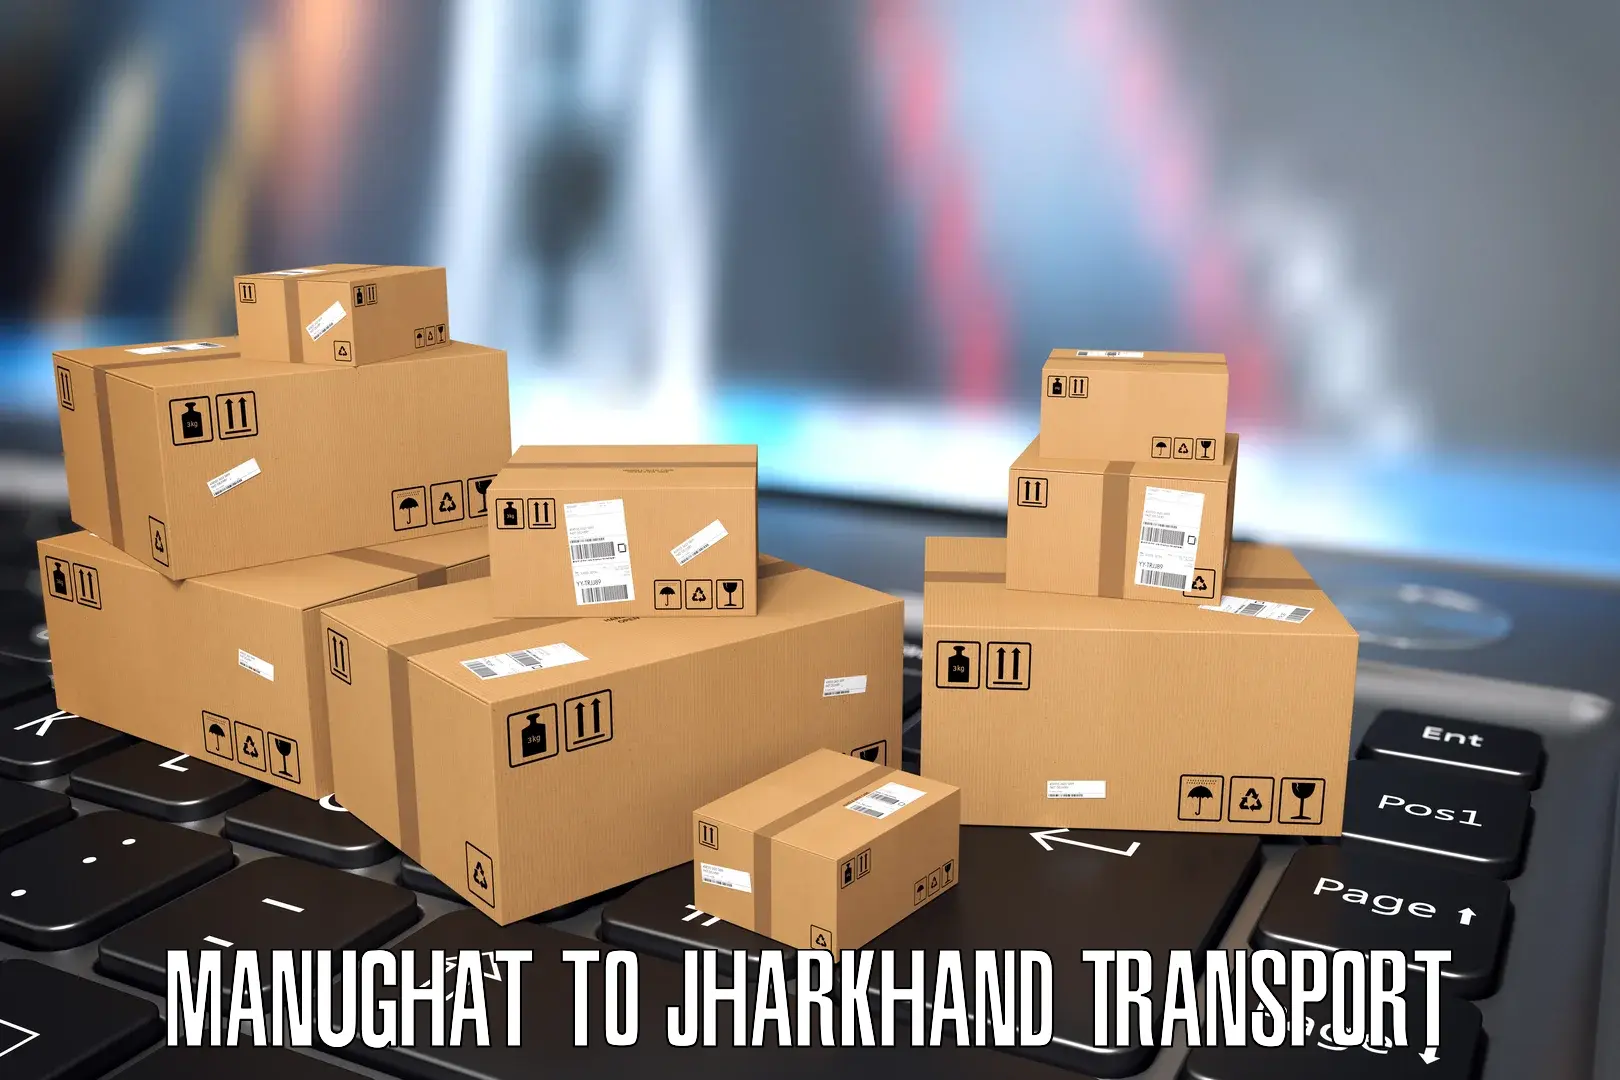 Daily parcel service transport Manughat to Jamshedpur